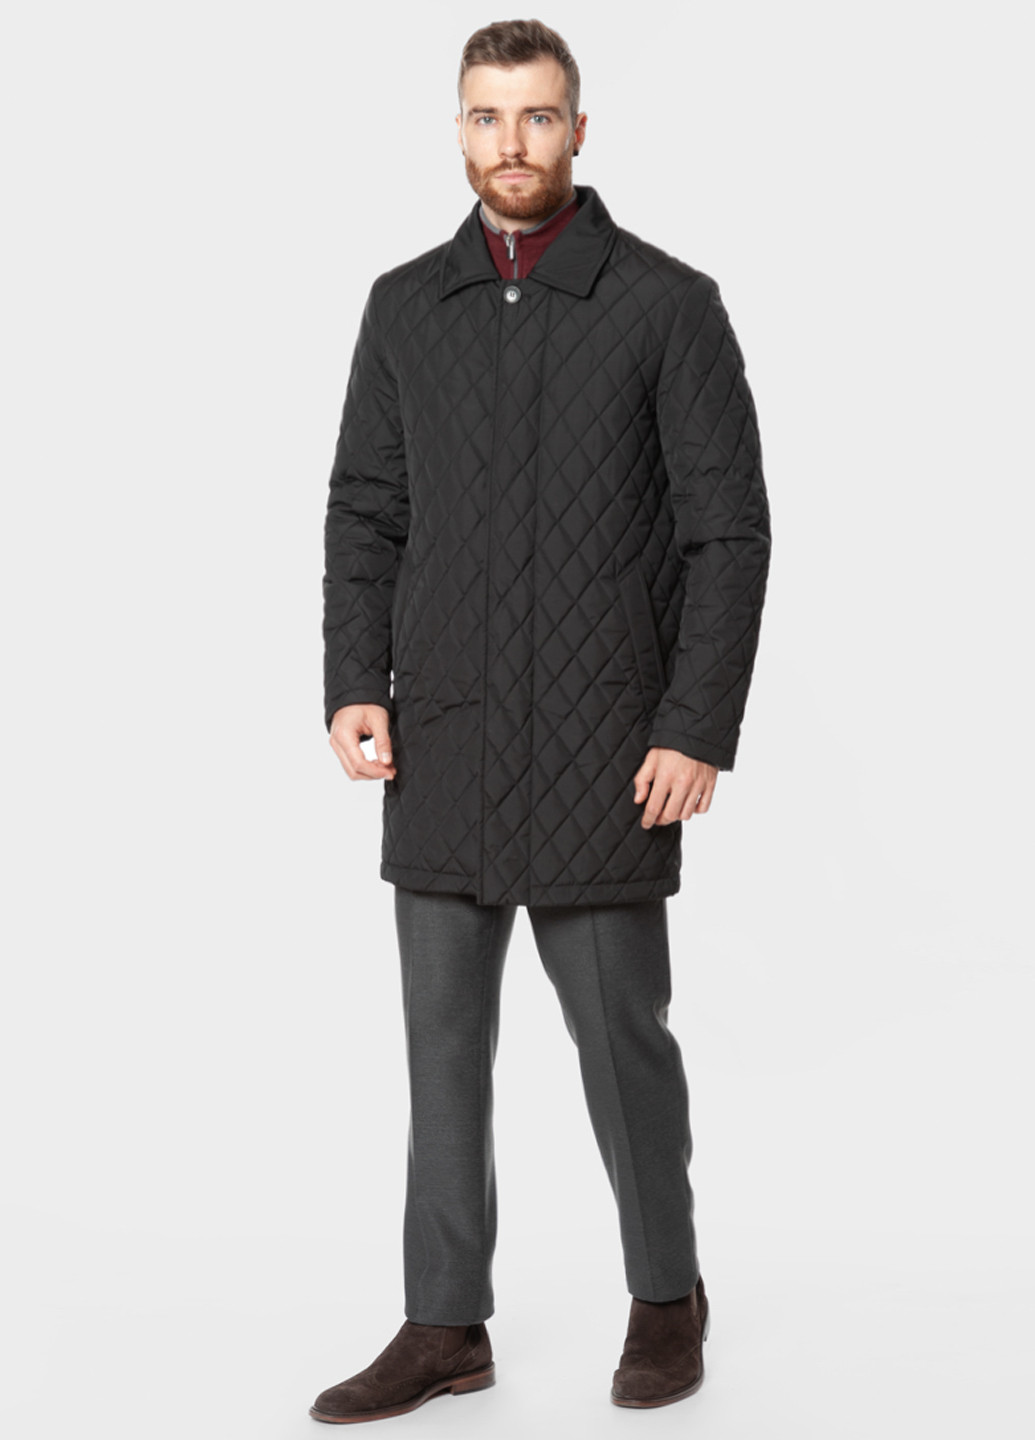 Черная зимняя куртка мужская Arber ДАДЛИ-2